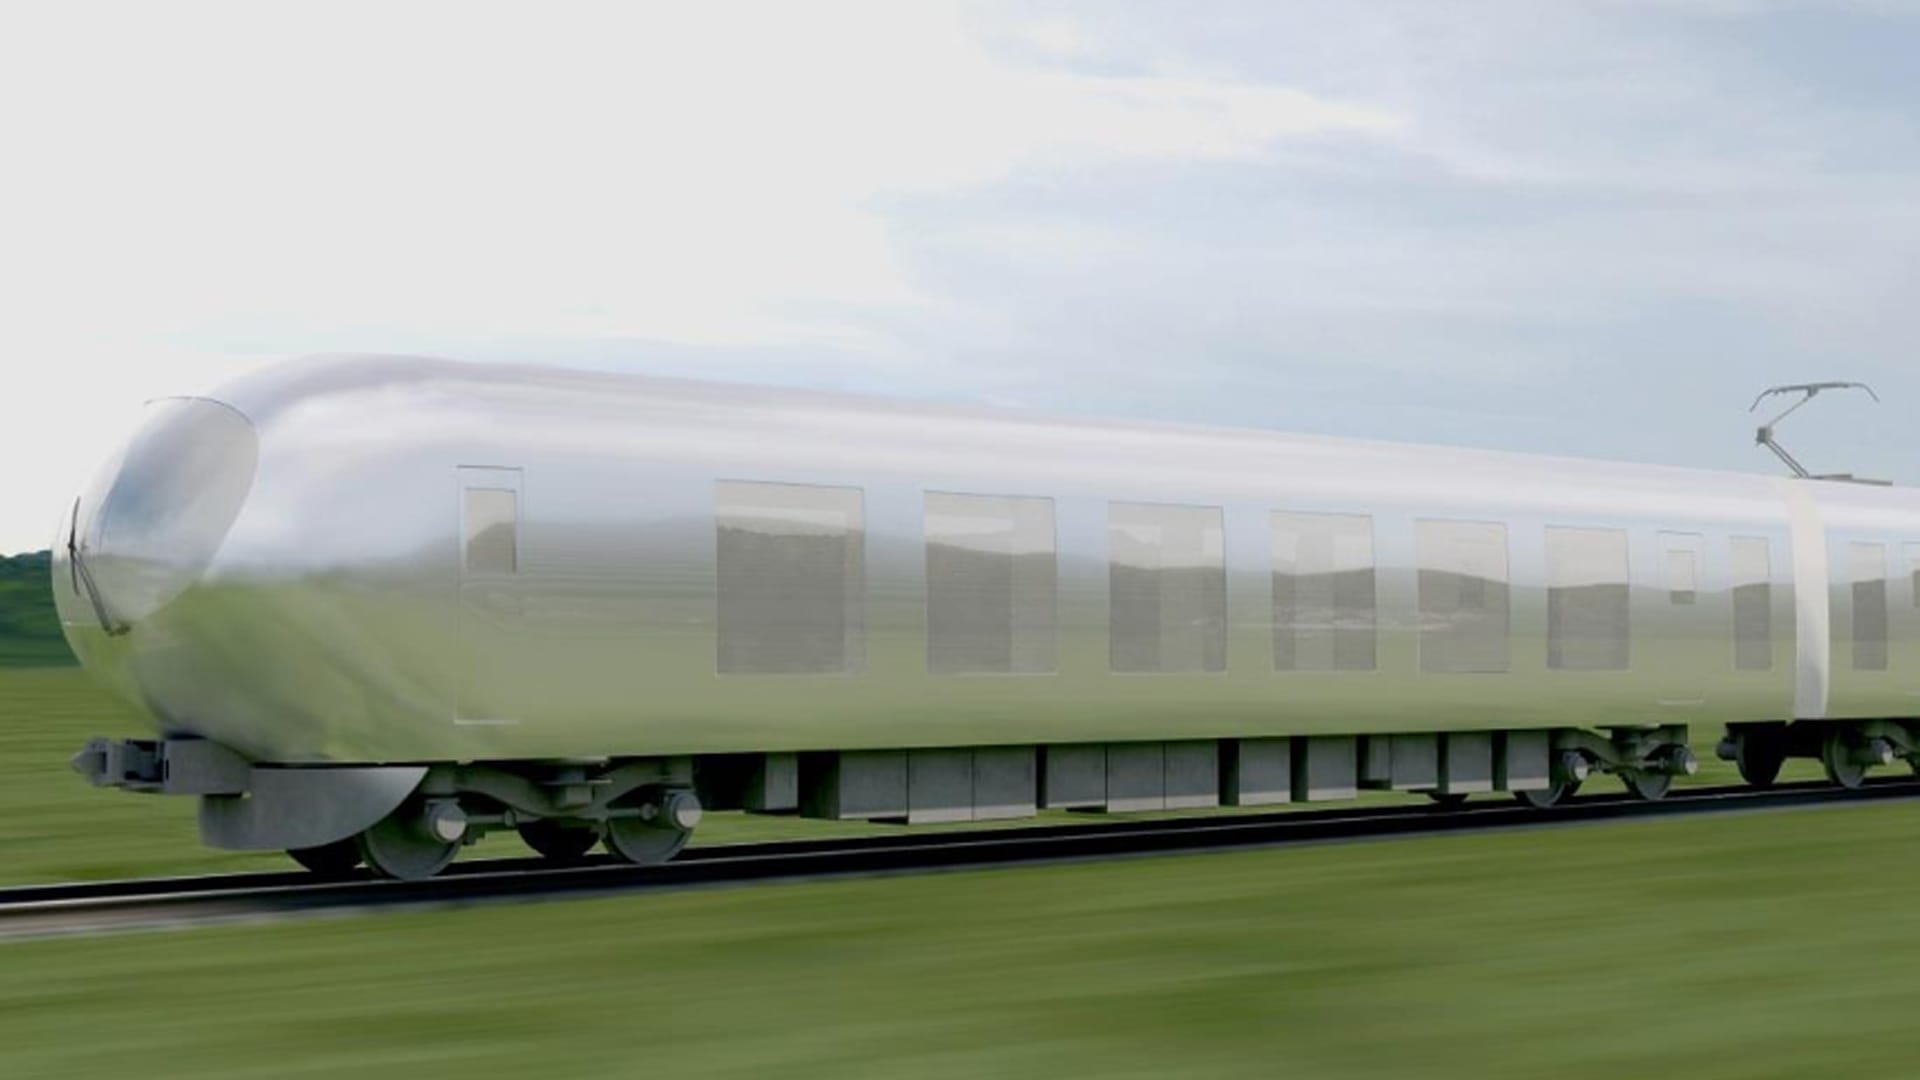 Das neueste Projekt der Designerin und Architektin ist der "unsichtbare" Zug, der ab 2018 durch Japan rollen soll. Er fügt sich mit seinen transparenten und verspiegelten Flächen in jede Umgebung ein wie ein Chamäleon.